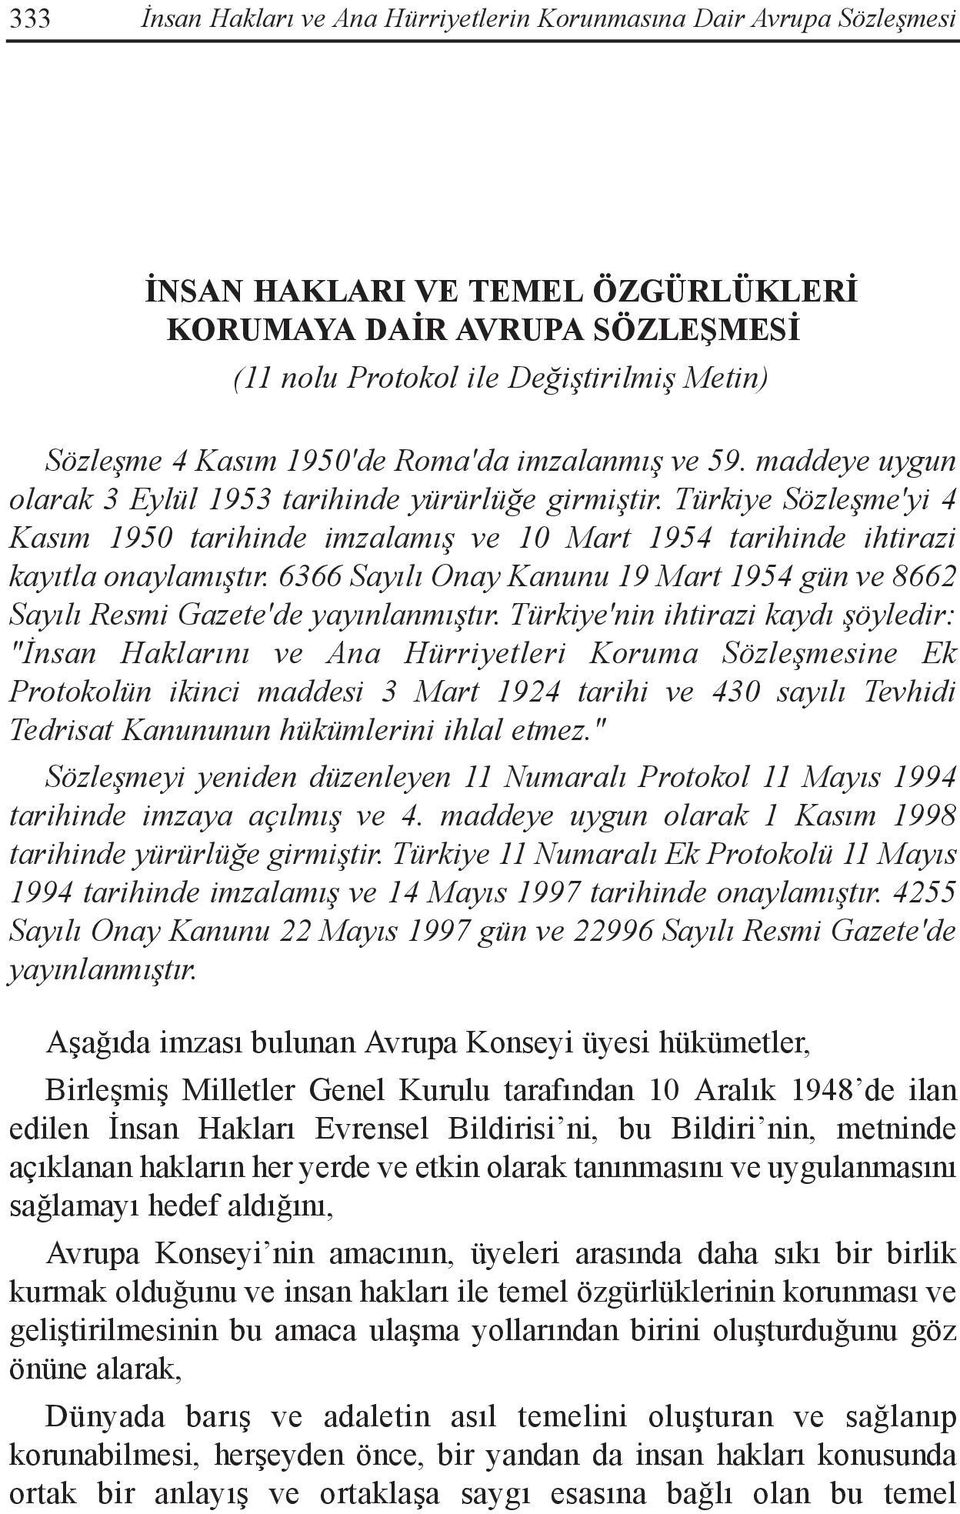 Türkiye Sözleşme'yi 4 Kasım 1950 tarihinde imzalamış ve 10 Mart 1954 tarihinde ihtirazi kayıtla onaylamıştır. 6366 Sayılı Onay Kanunu 19 Mart 1954 gün ve 8662 Sayılı Resmi Gazete'de yayınlanmıştır.